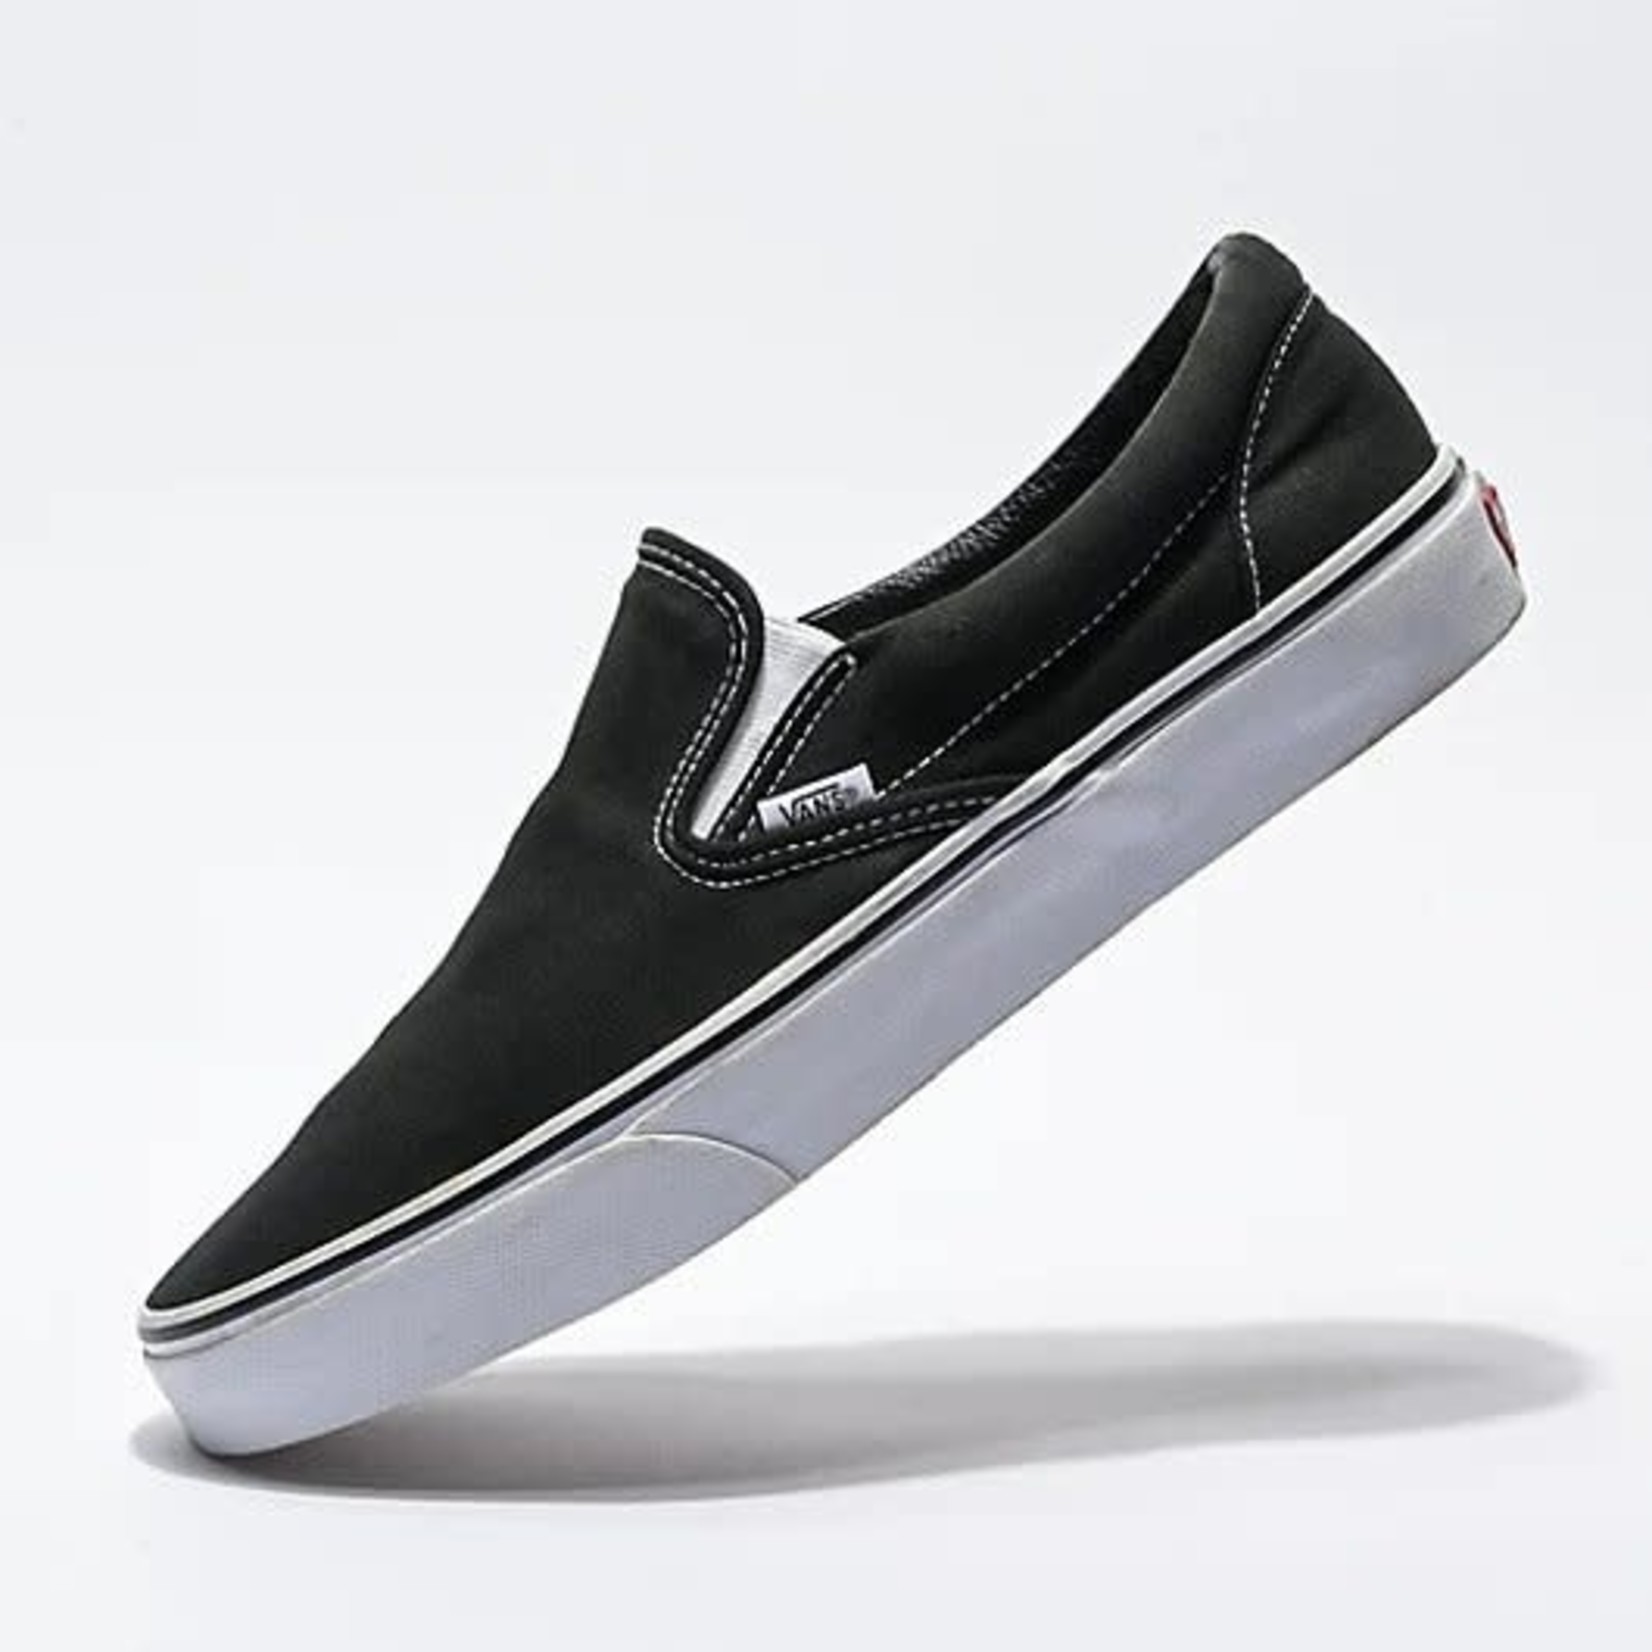 Vans Classic Slip-On Skate Shoes - Black/White - - Attic Skate & Snow